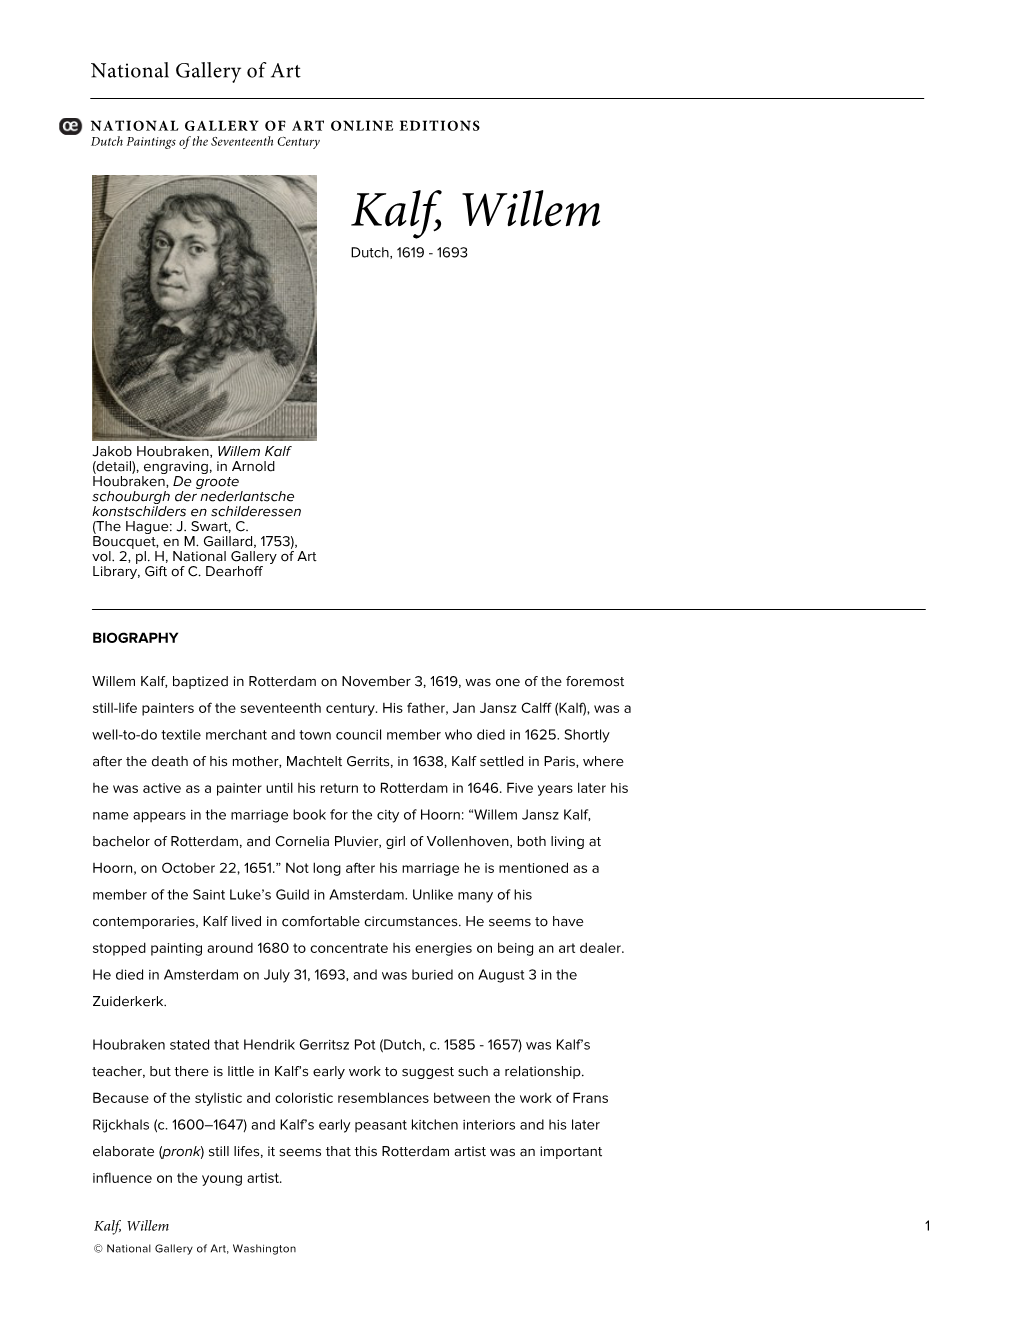 Kalf, Willem Dutch, 1619 - 1693